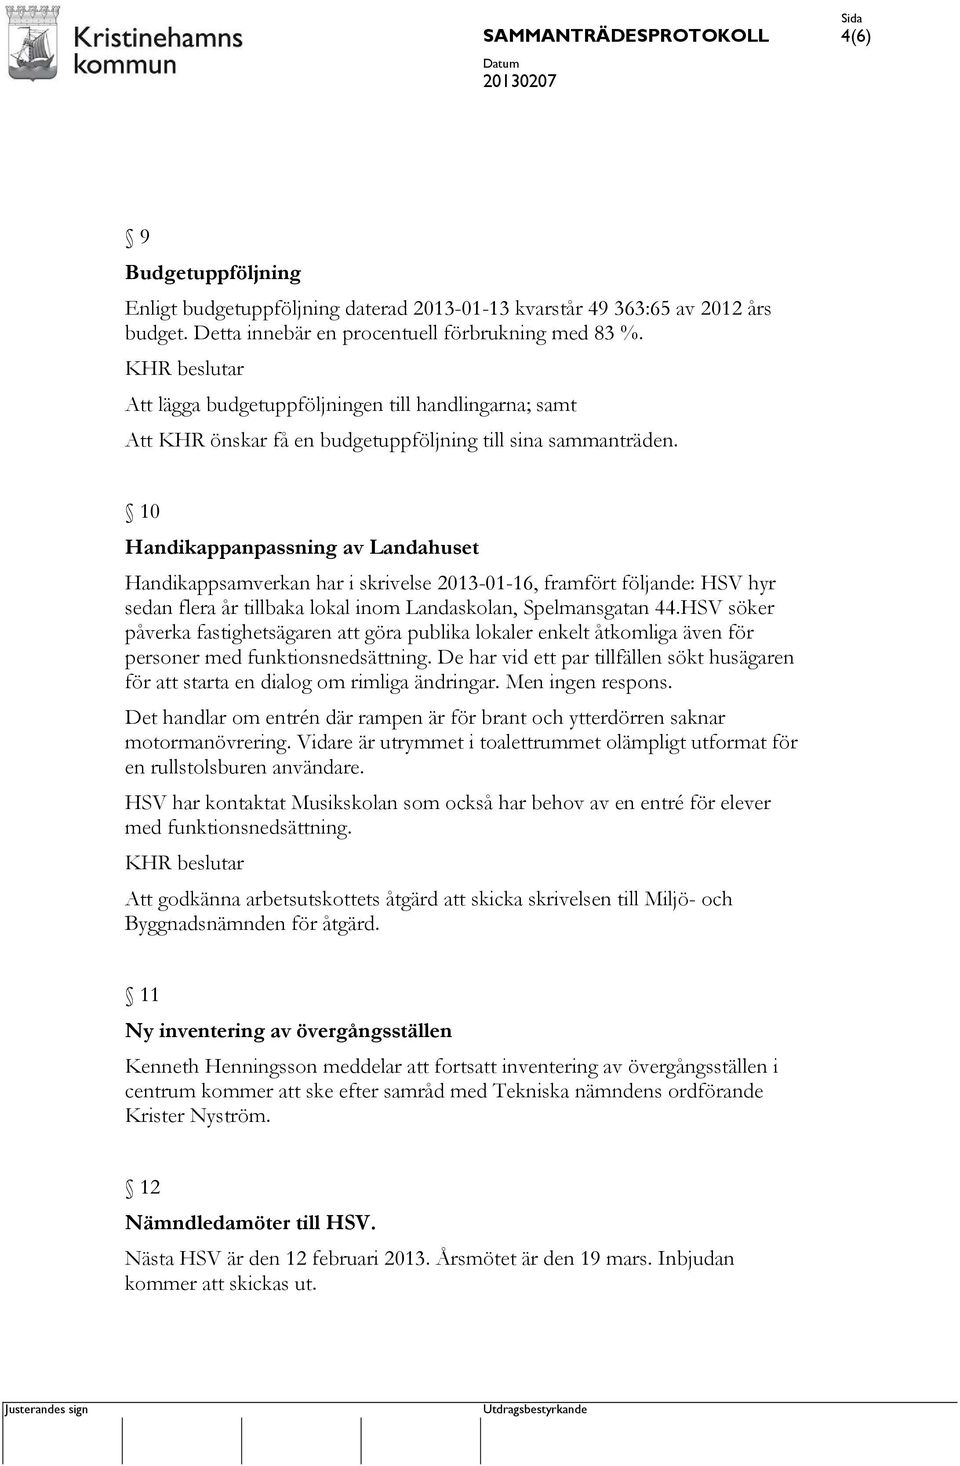 10 Handikappanpassning av Landahuset Handikappsamverkan har i skrivelse 2013-01-16, framfört följande: HSV hyr sedan flera år tillbaka lokal inom Landaskolan, Spelmansgatan 44.